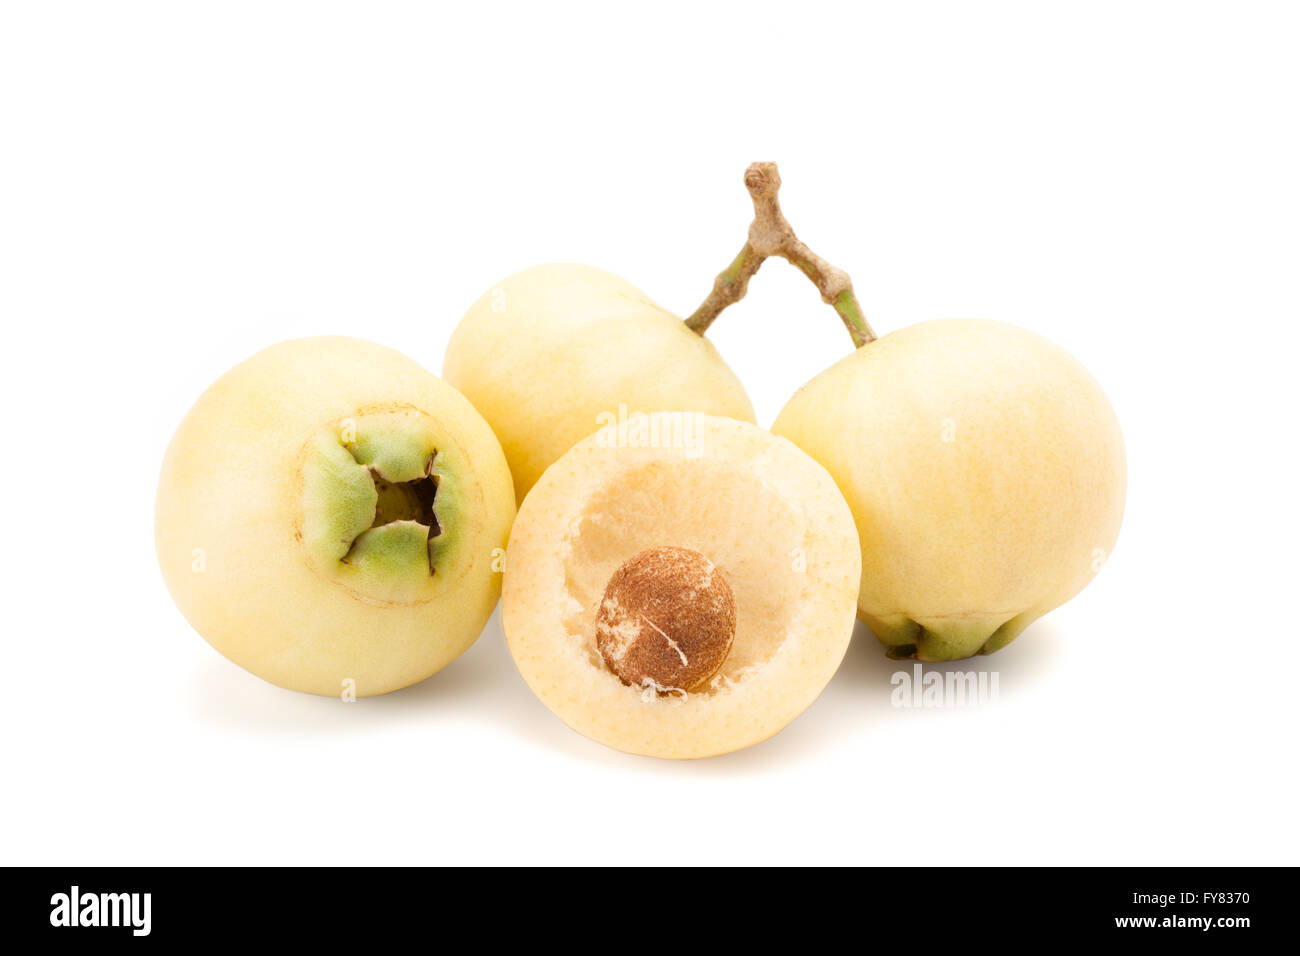 Syzygium jambos or rose apple isolated on white background Stock Photo